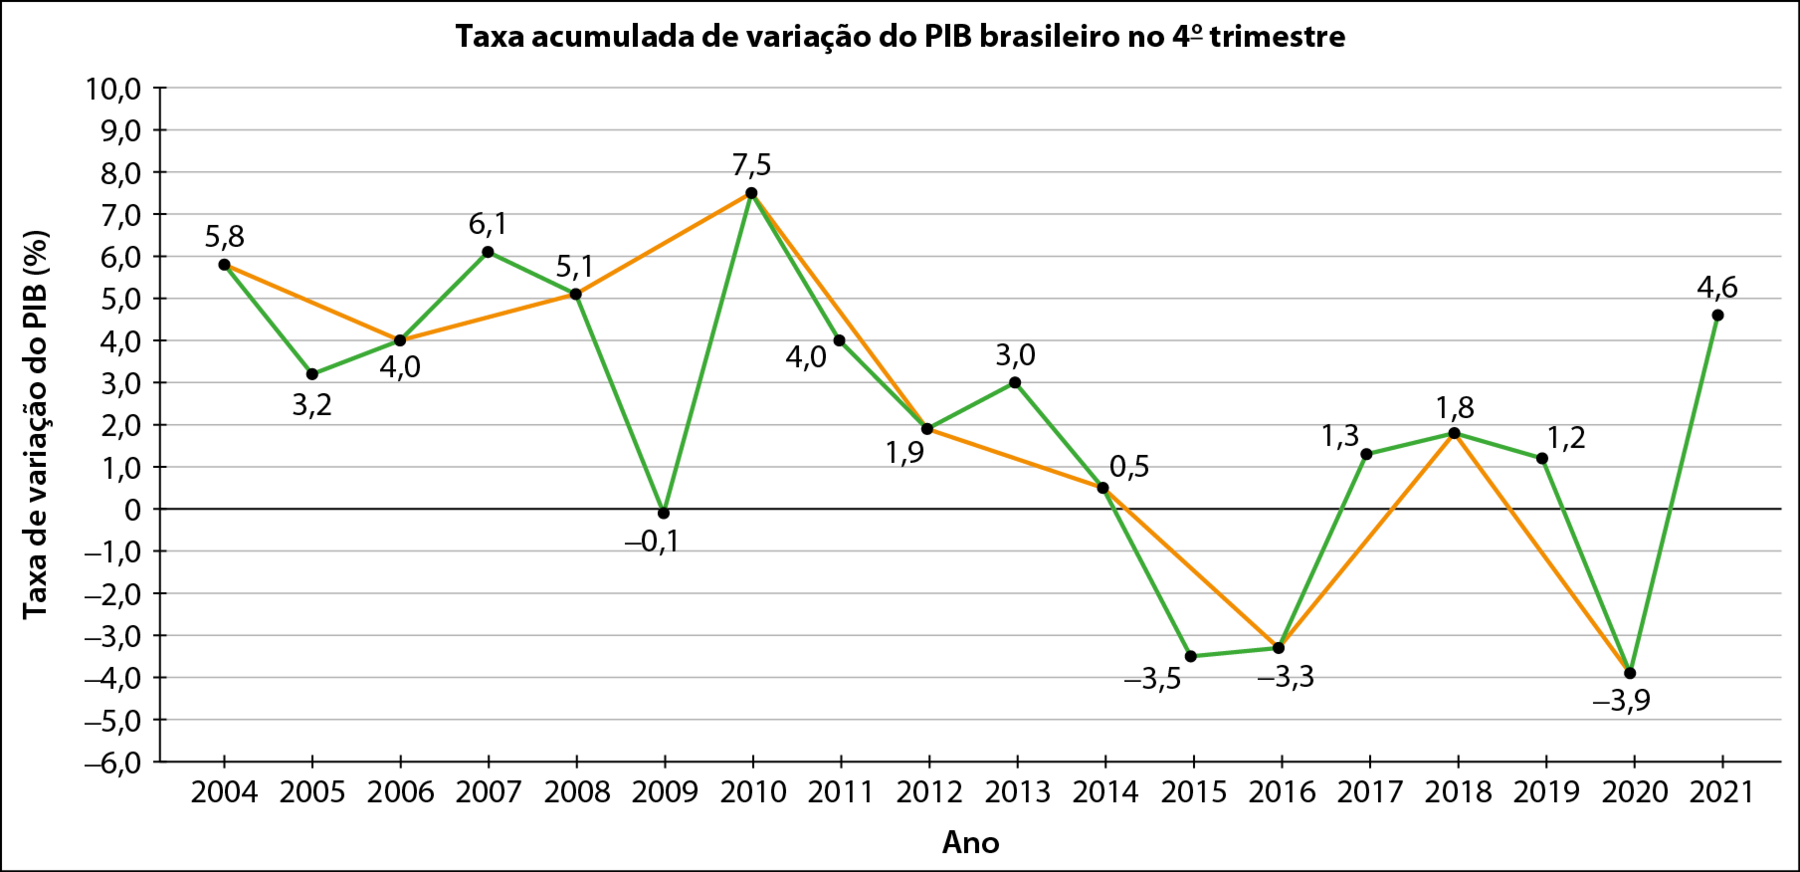 Gráfico de linhas. Título do gráfico: 'Taxa acumulada de variação do PIB brasileiro no quarto trimestre'. Há duas linhas, uma verde e uma laranja. Eixo horizontal: ano de 2004 a 2021. Eixo vertical: Taxa de variação do PIB em porcentagem, com escala de menos 6,0 a 10,0., de 1 em 1. Os dados são: Linha laranja; 2004: 5,8. 2006: 4,0. 2008: 5,1. 2010: 7,5. 2012: 1,9. 2014: 0,5. 2016: menos 3,3. 2018: 1,8. 2020: menos 3,9. Linha verde. Em 2004: 5,8. 2005: 3,2. 2006: 4,0. 2007: 6,1. 2008: 5,1. 2009: menos 0,1. 2010: 7,5. 2011: 4,0. 2012: 1,9. 2013: 3,3. 2014: 0,5. 2015: menos 3,5. 2016: menos 3,3. 2017: 1,3. 2018: 1,8. 2019: 1,2. 2020: menos 3,9. 2021: 4,6.